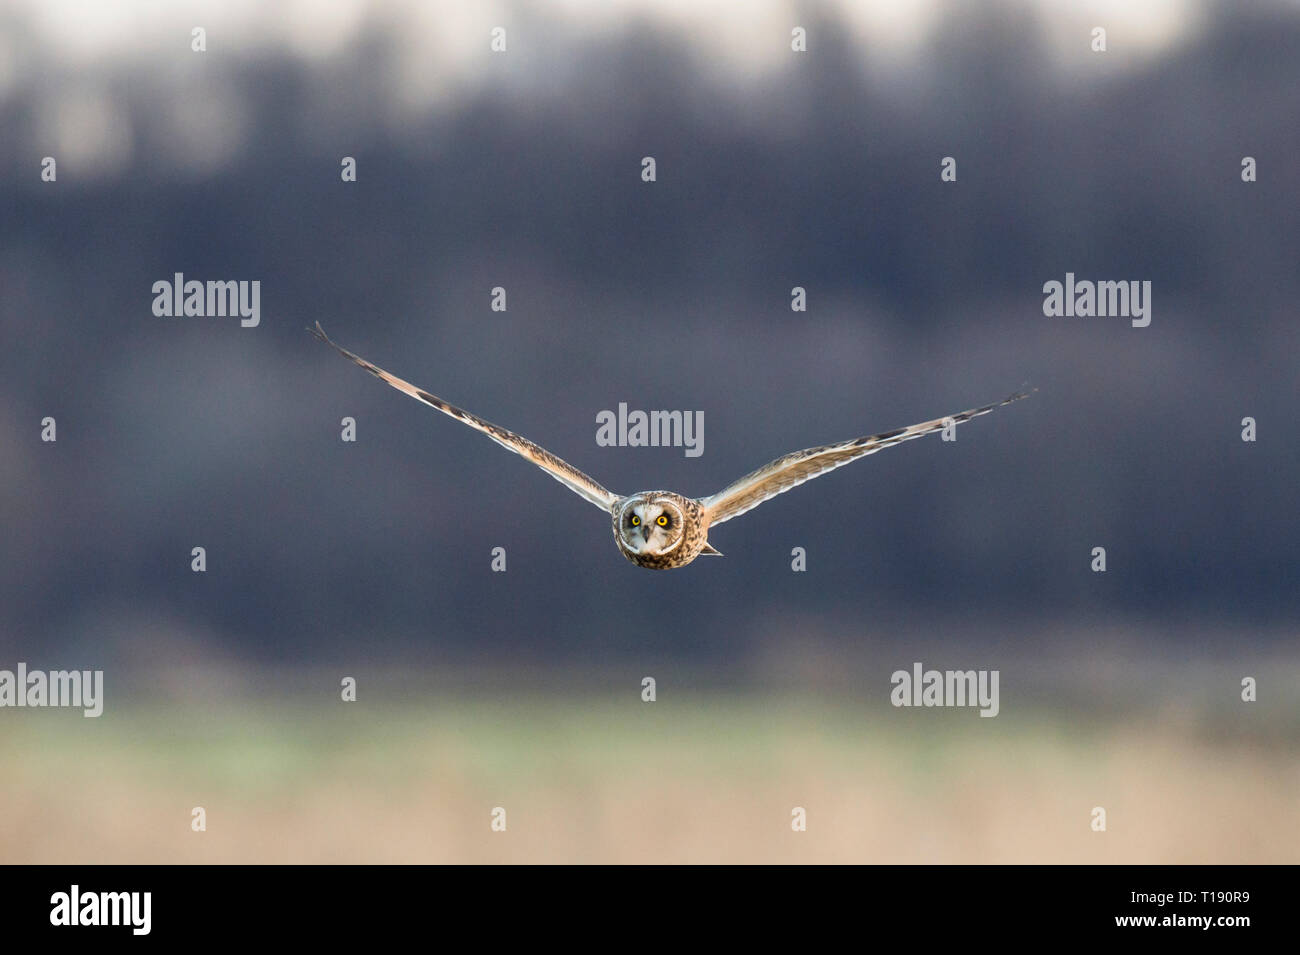 Eine Sumpfohreule fliegt an der Kamera und schaut in Richtung der Kamera im sanften Abendlicht vor einem dunklen Hintergrund. Stockfoto